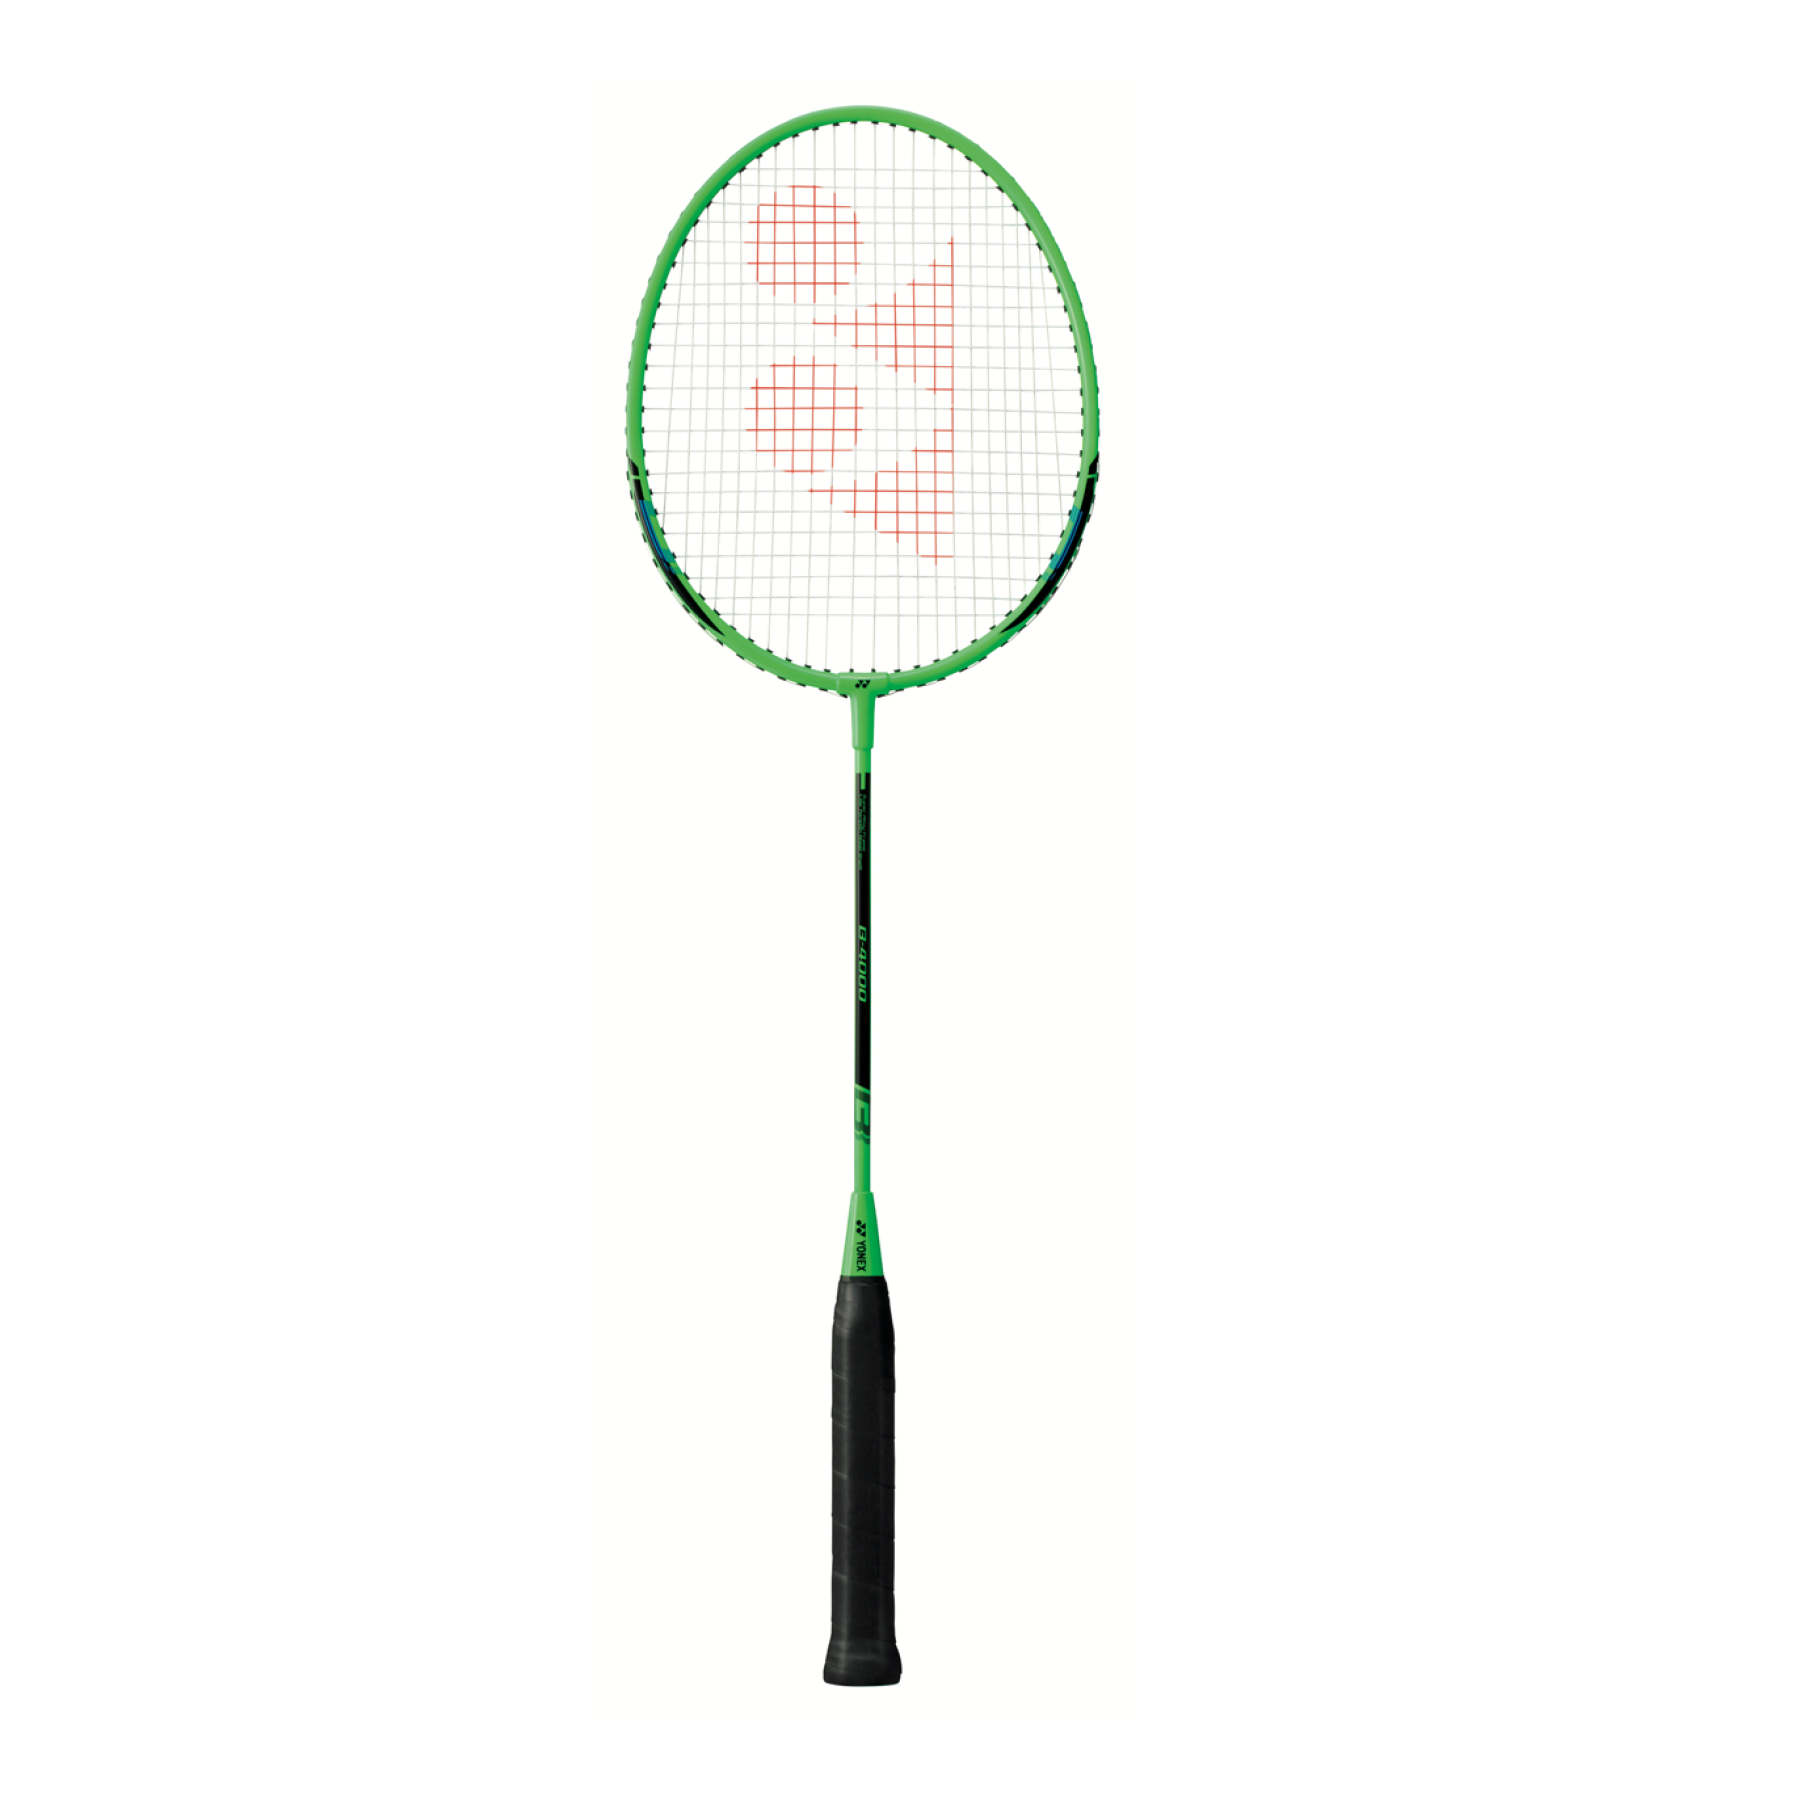 Badmintonschläger Yonex gr-020g g3